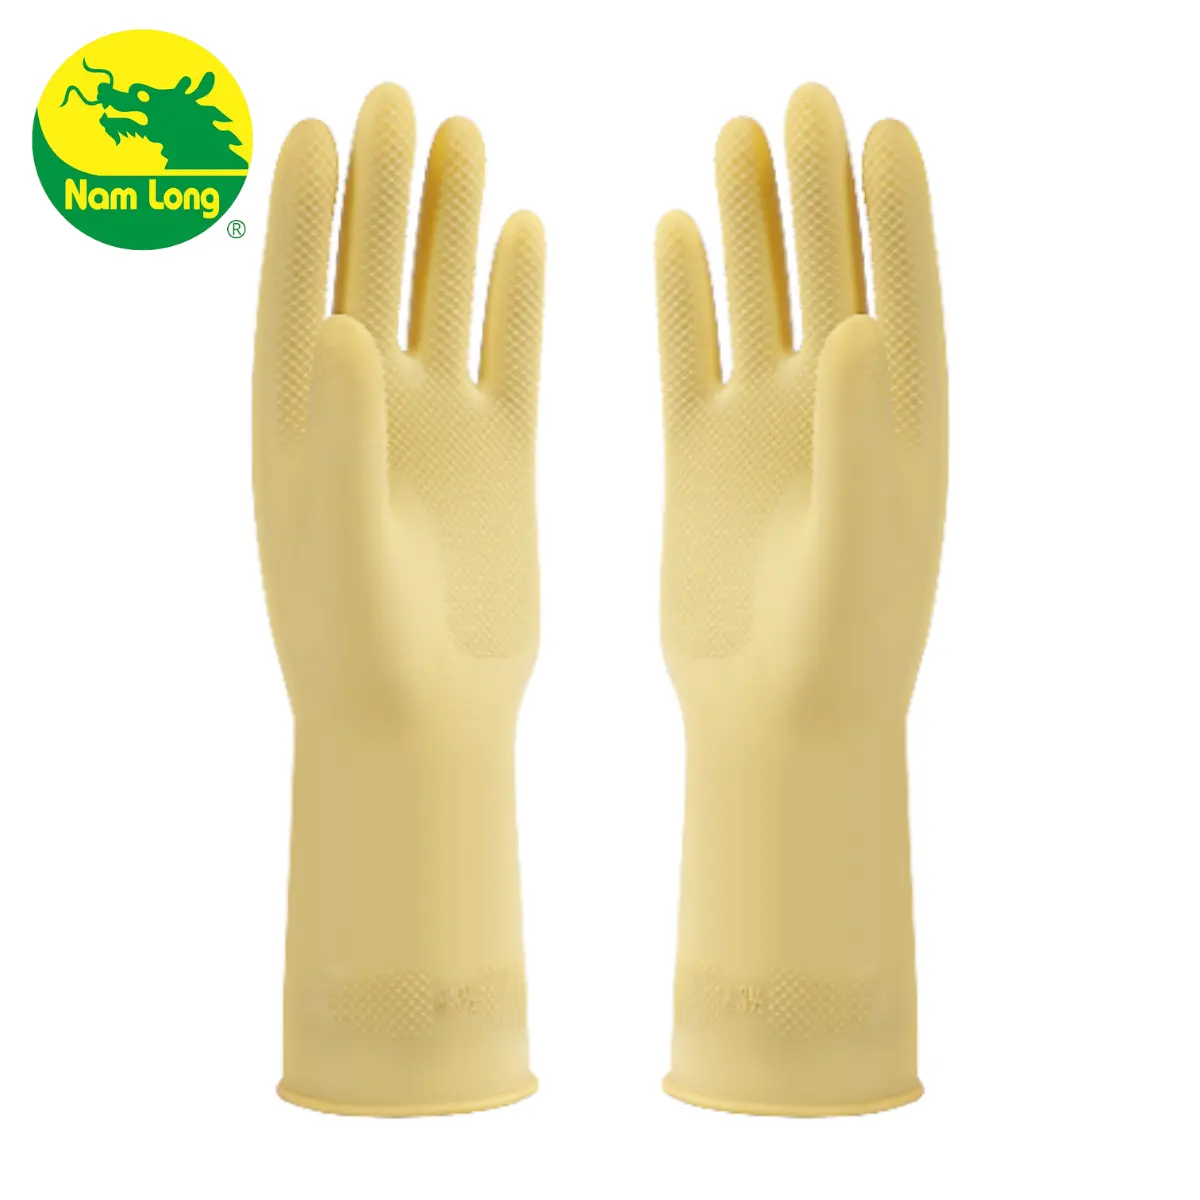 Prodotti di alta qualità, guanti lunghi e di grandi dimensioni, taglia M, L, XL, guanti di gomma per uso domestico per il lavaggio, pulizia